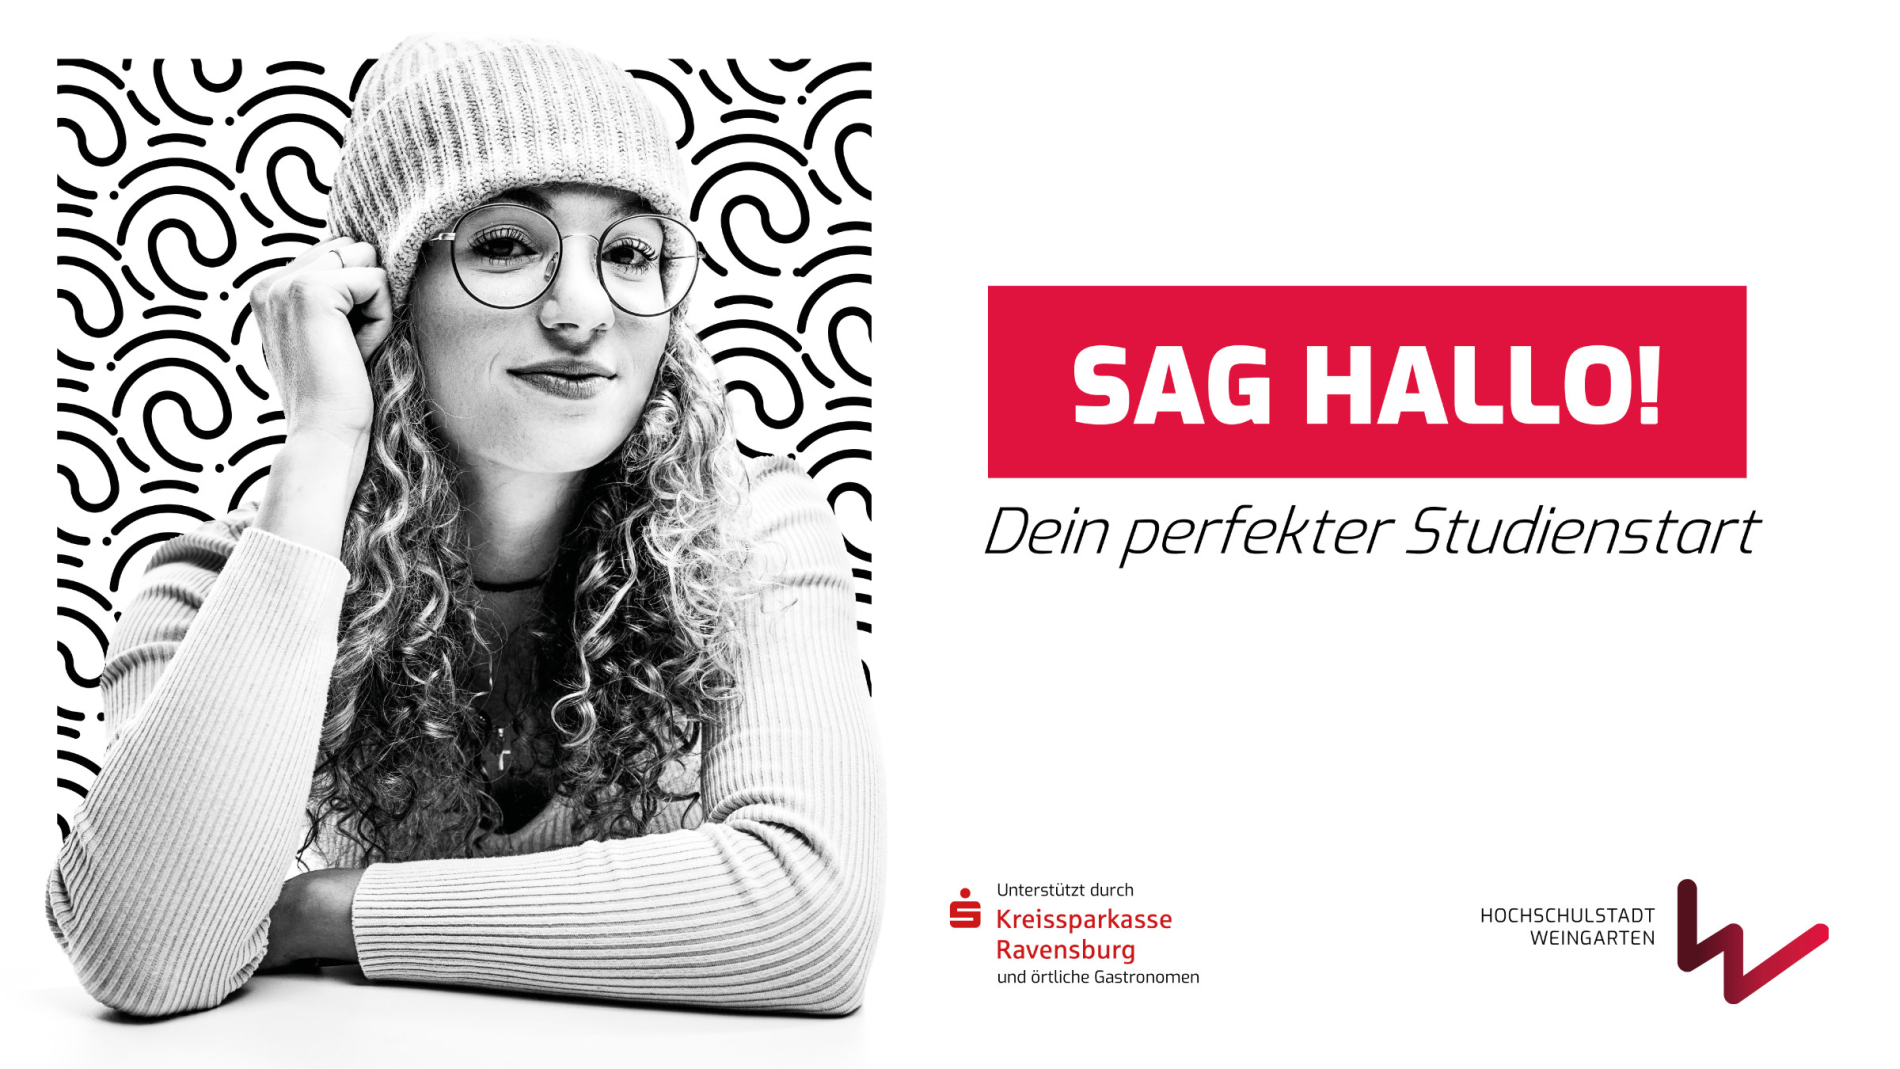 Hochschulstadt Weingarten Kampagne "Sag Hallo"